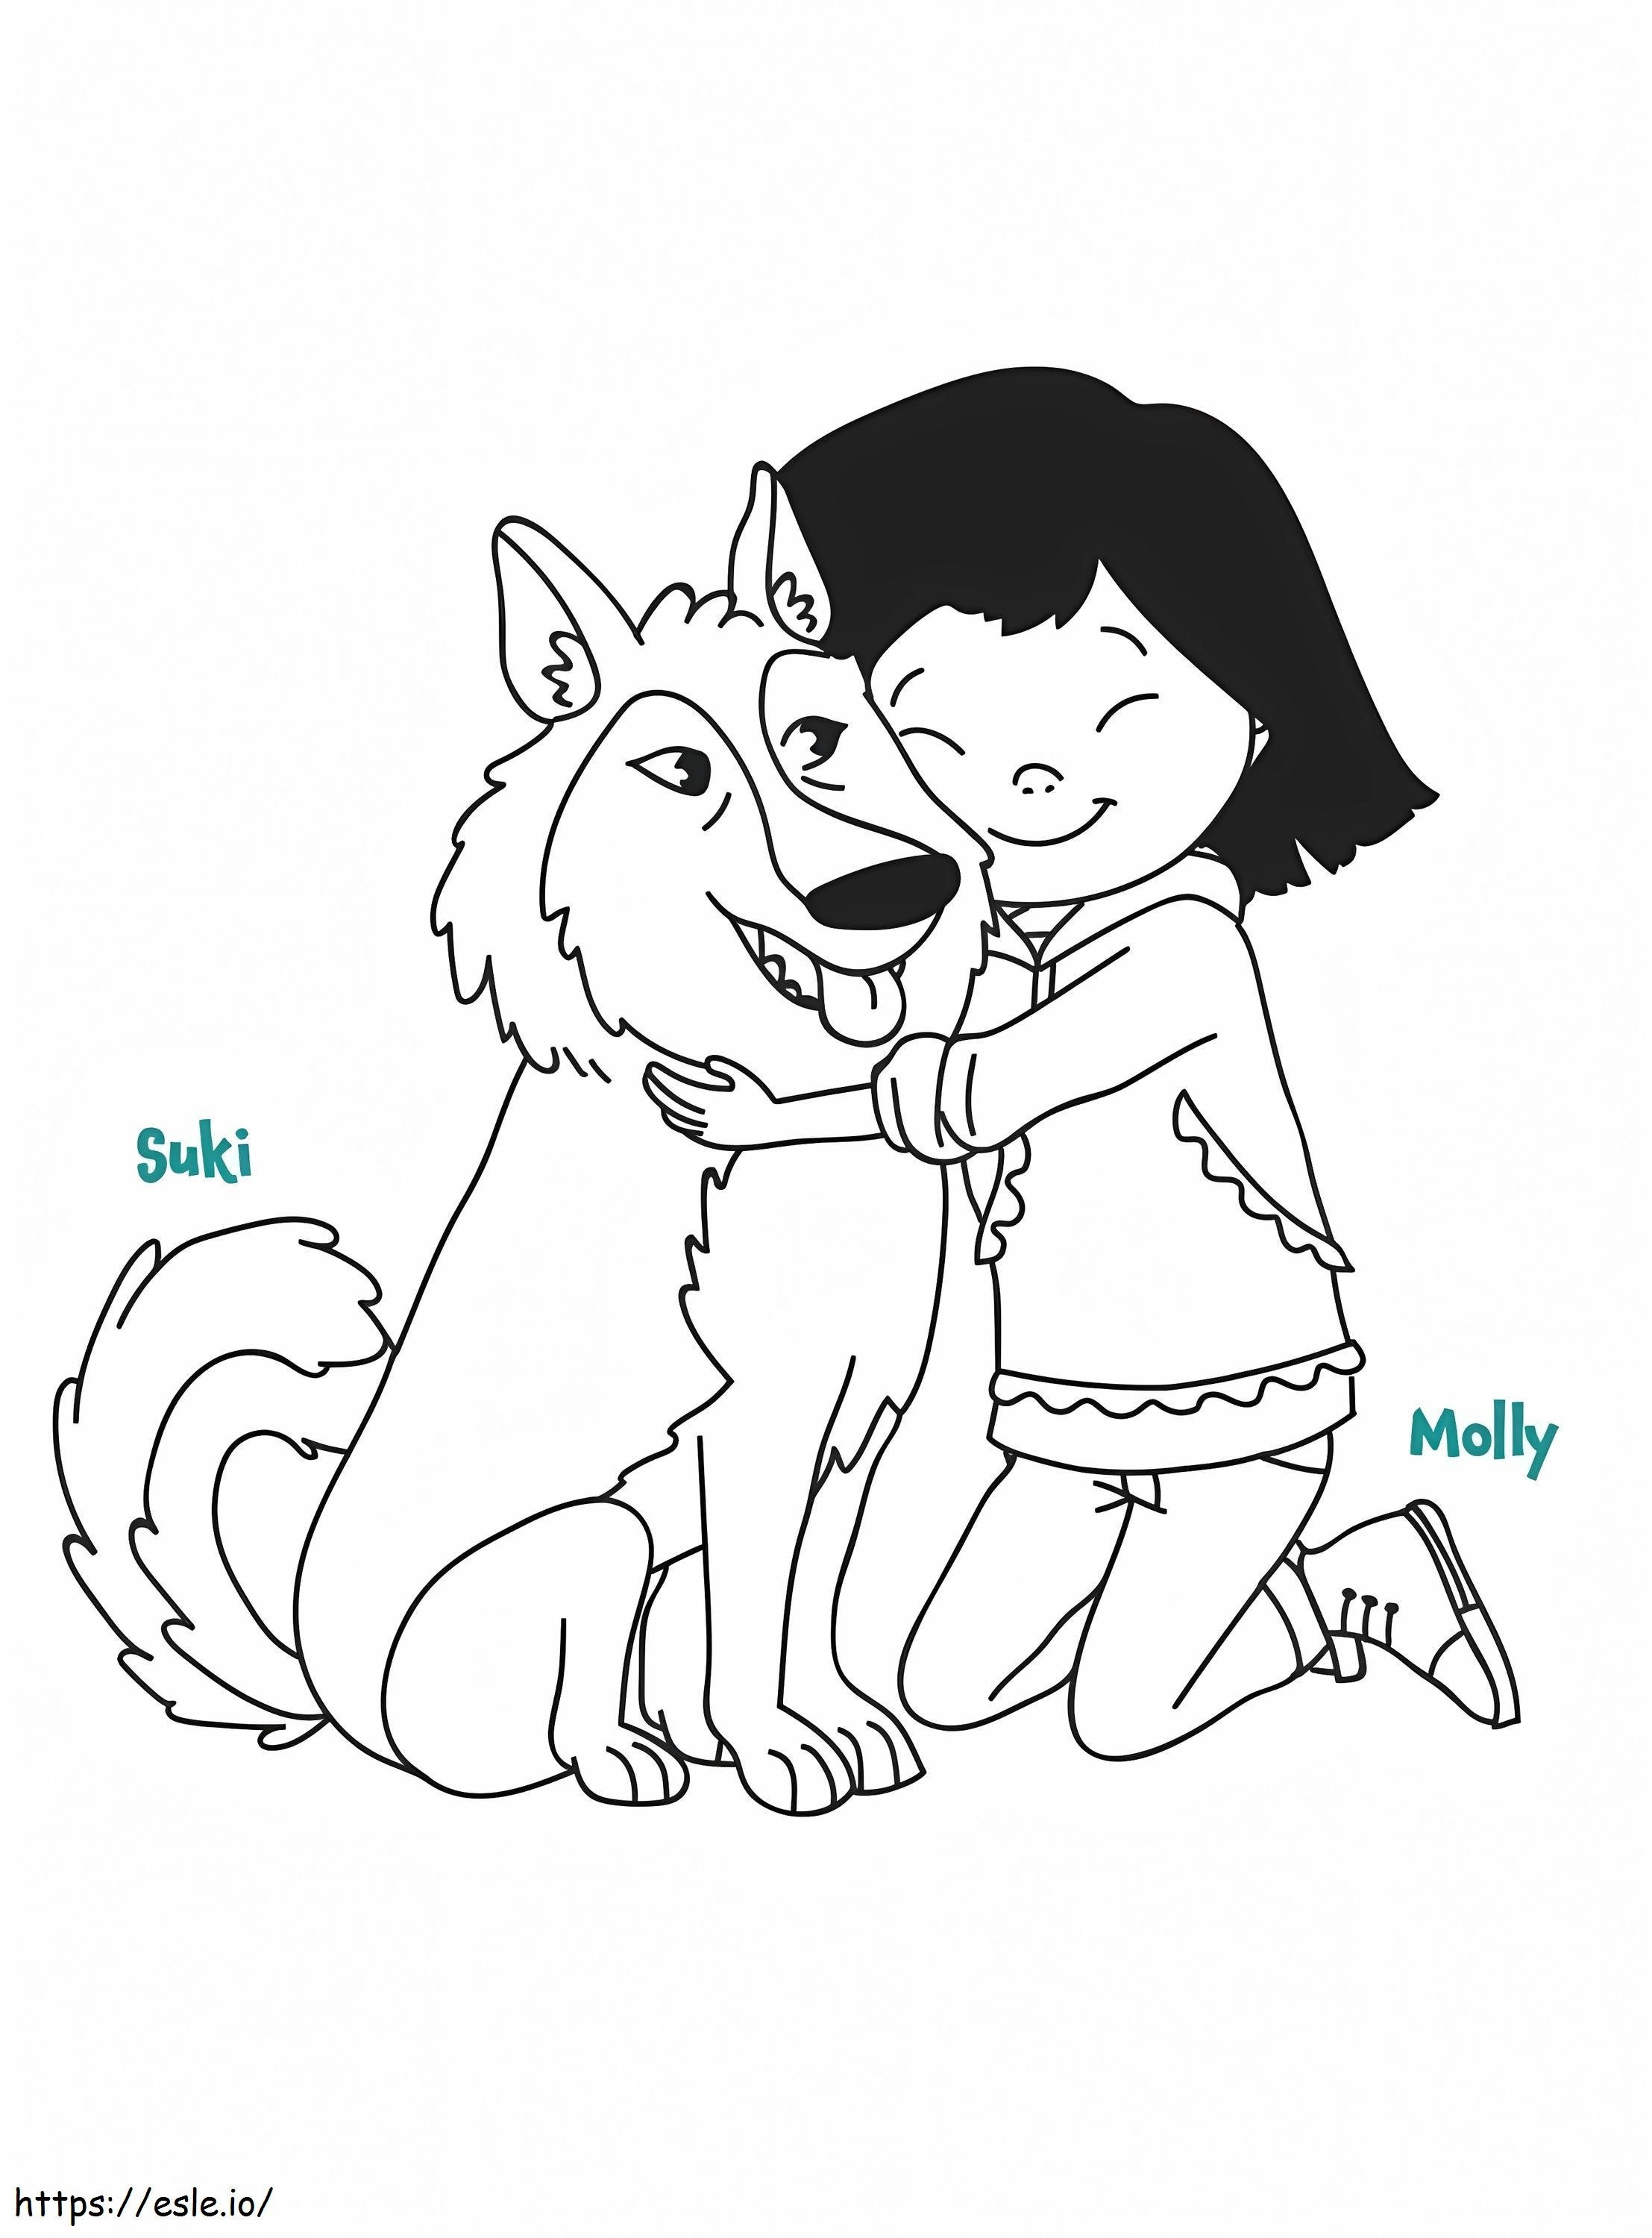 Coloriage Molly et Suki de Molly de Denali à imprimer dessin